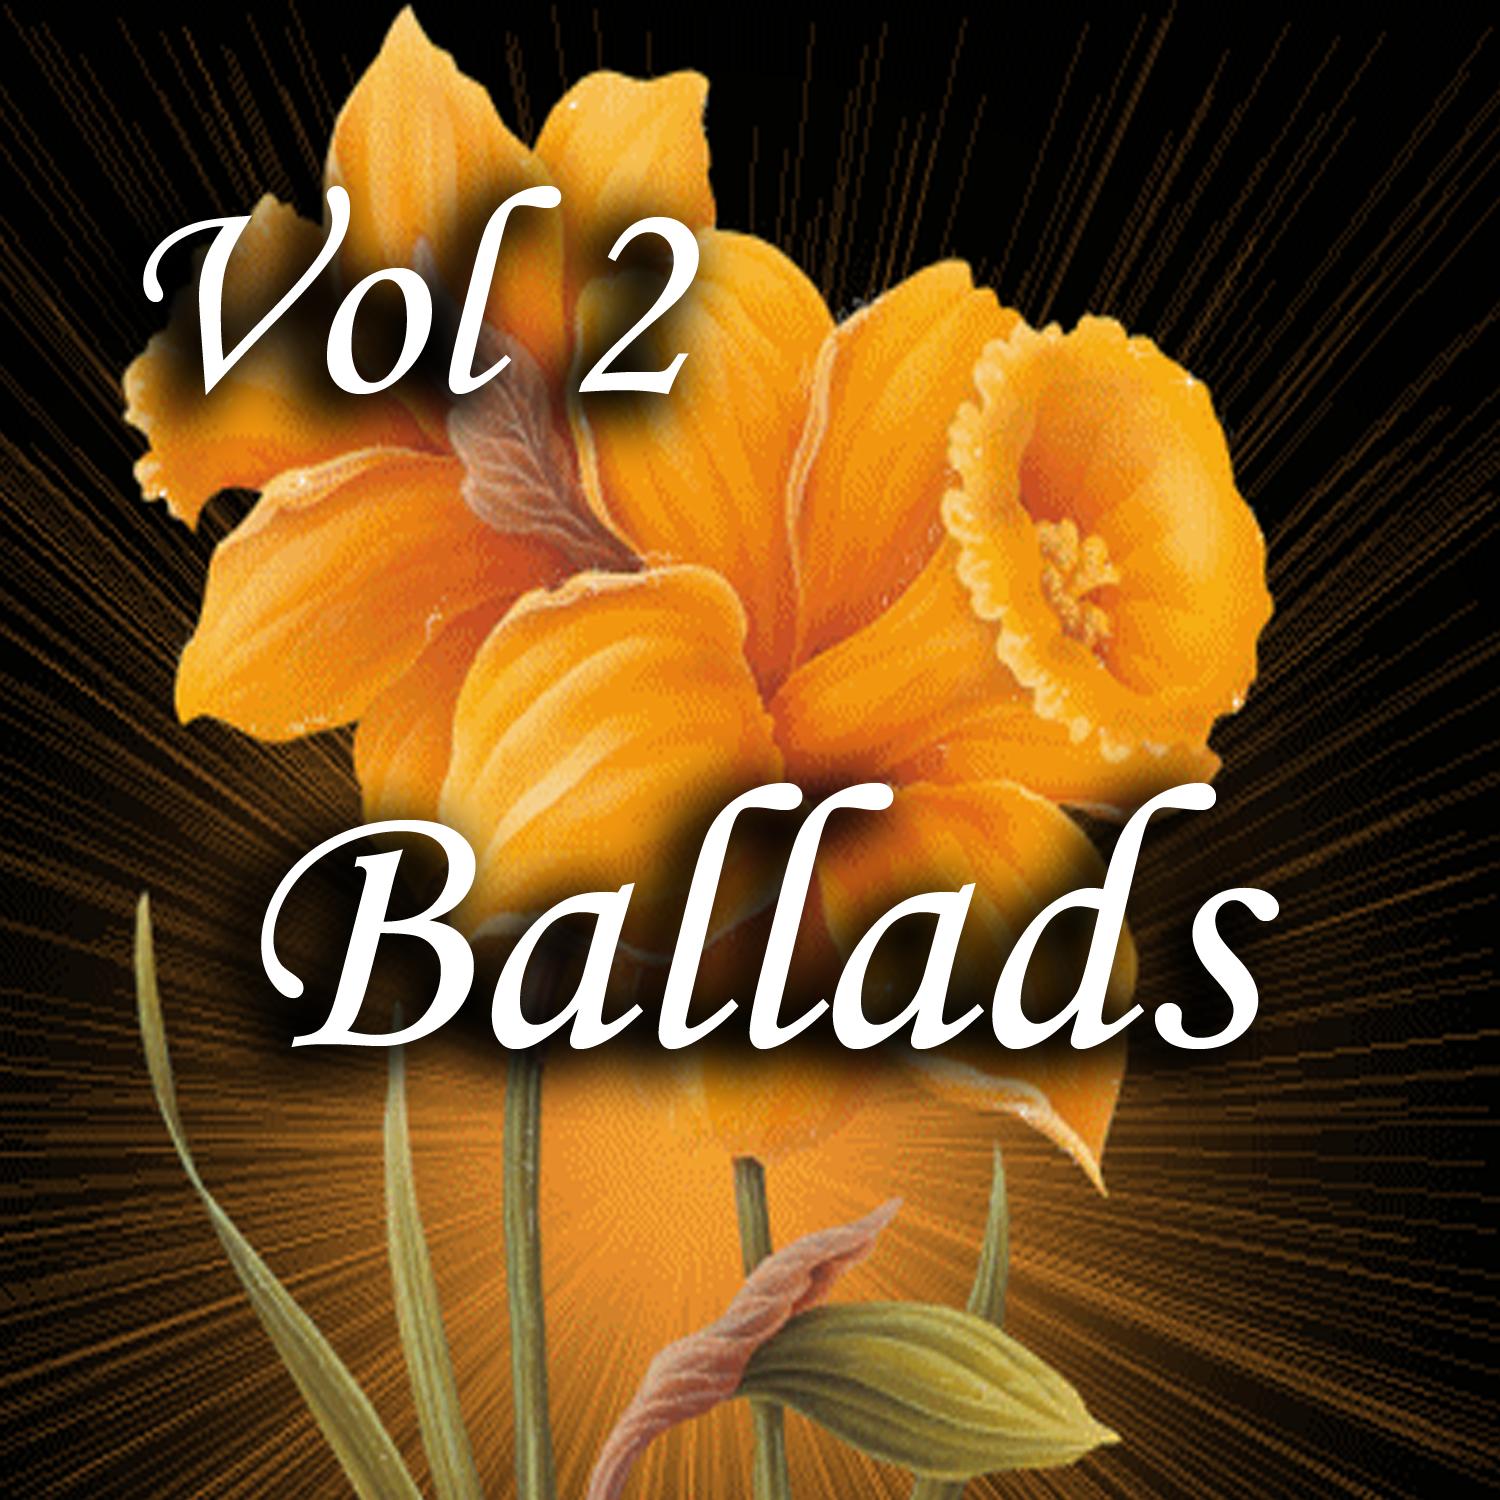 Ballads, Vol. 2